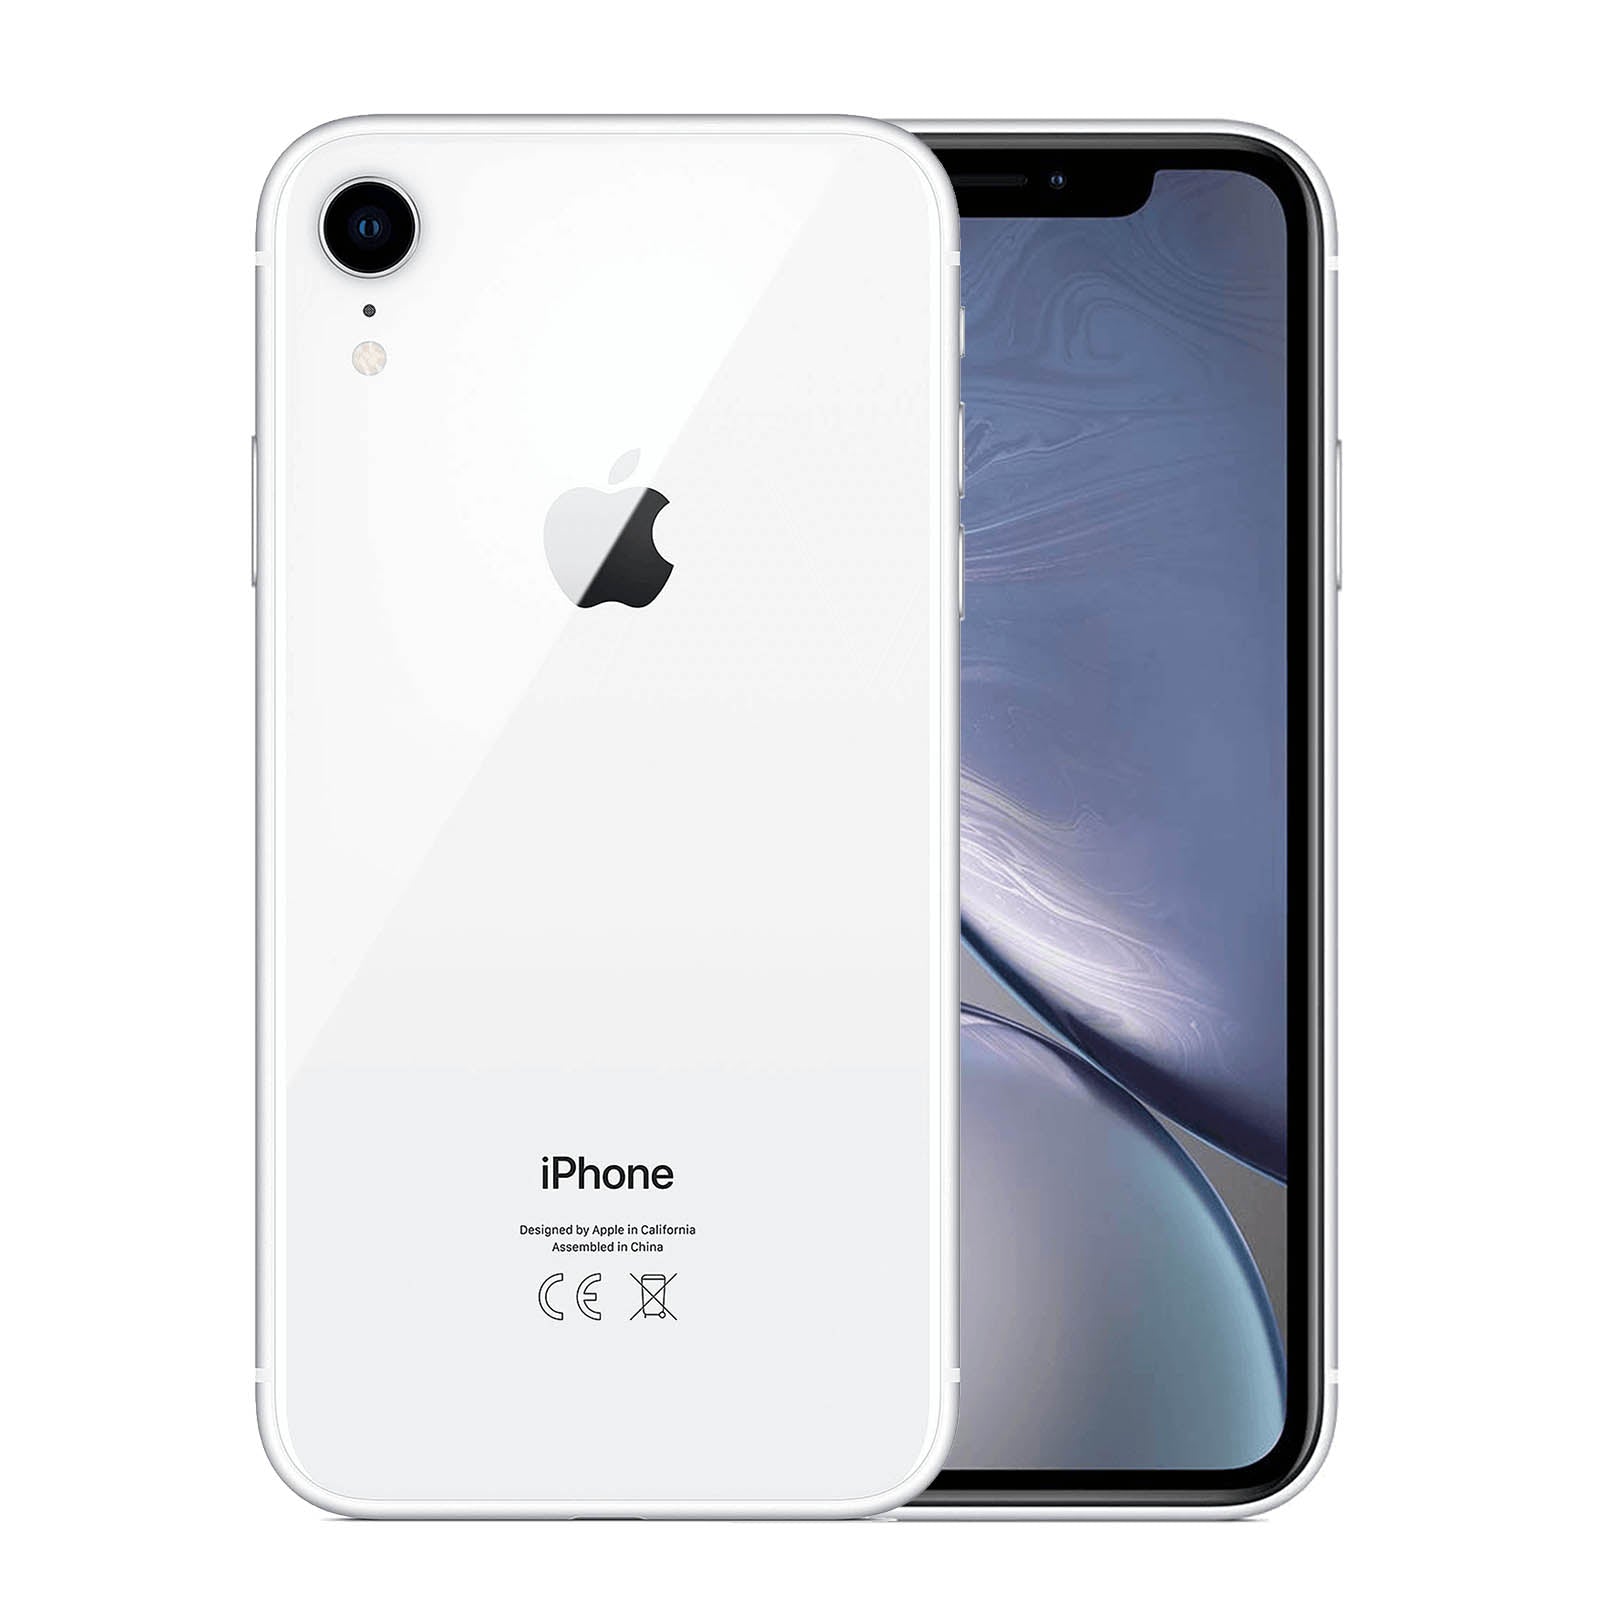 Apple iPhone XR 64GB - White – Loop Mobile - AU